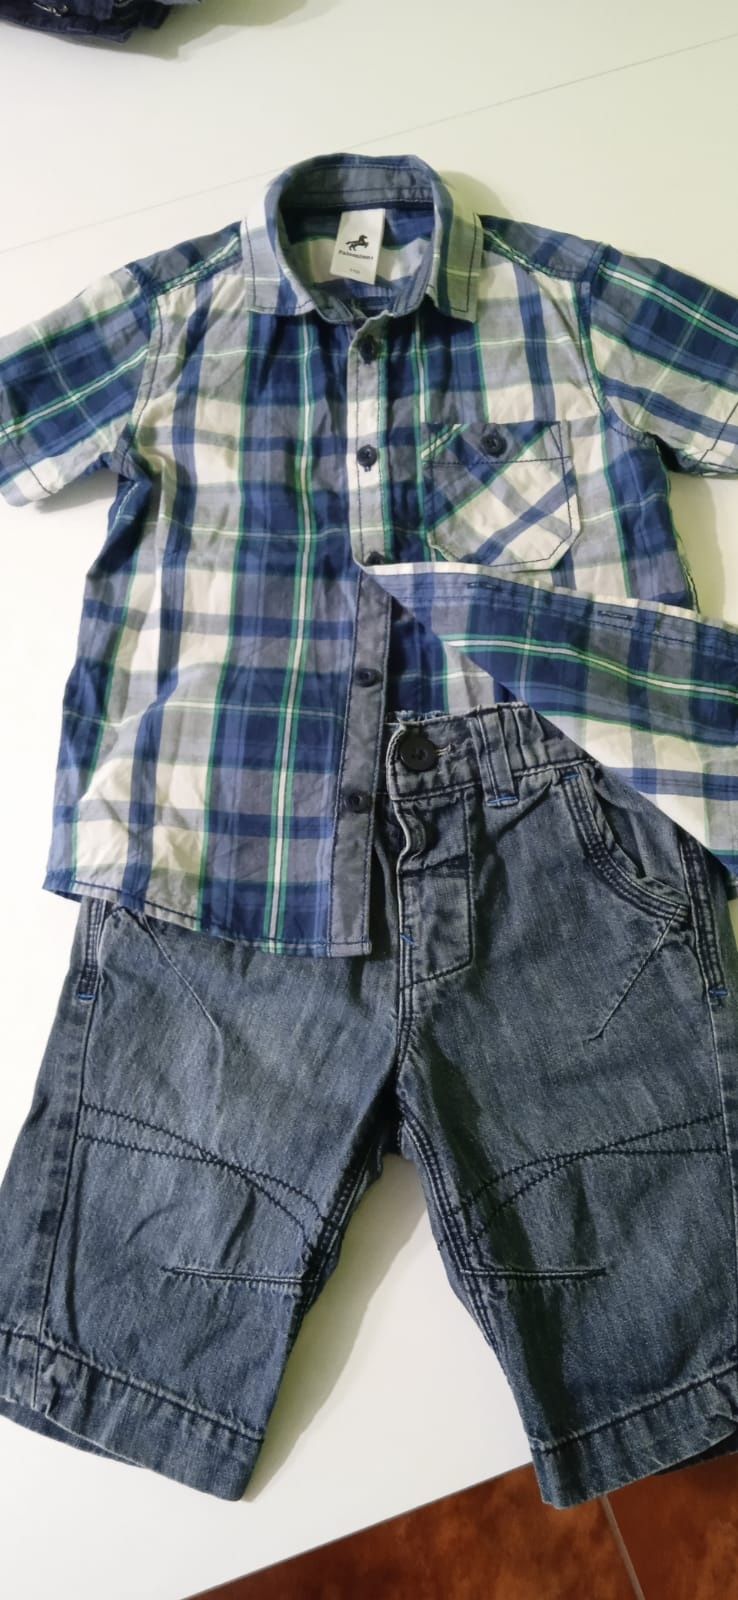 Krótkie spodenki jeansowe oraz koszula krótki rękaw